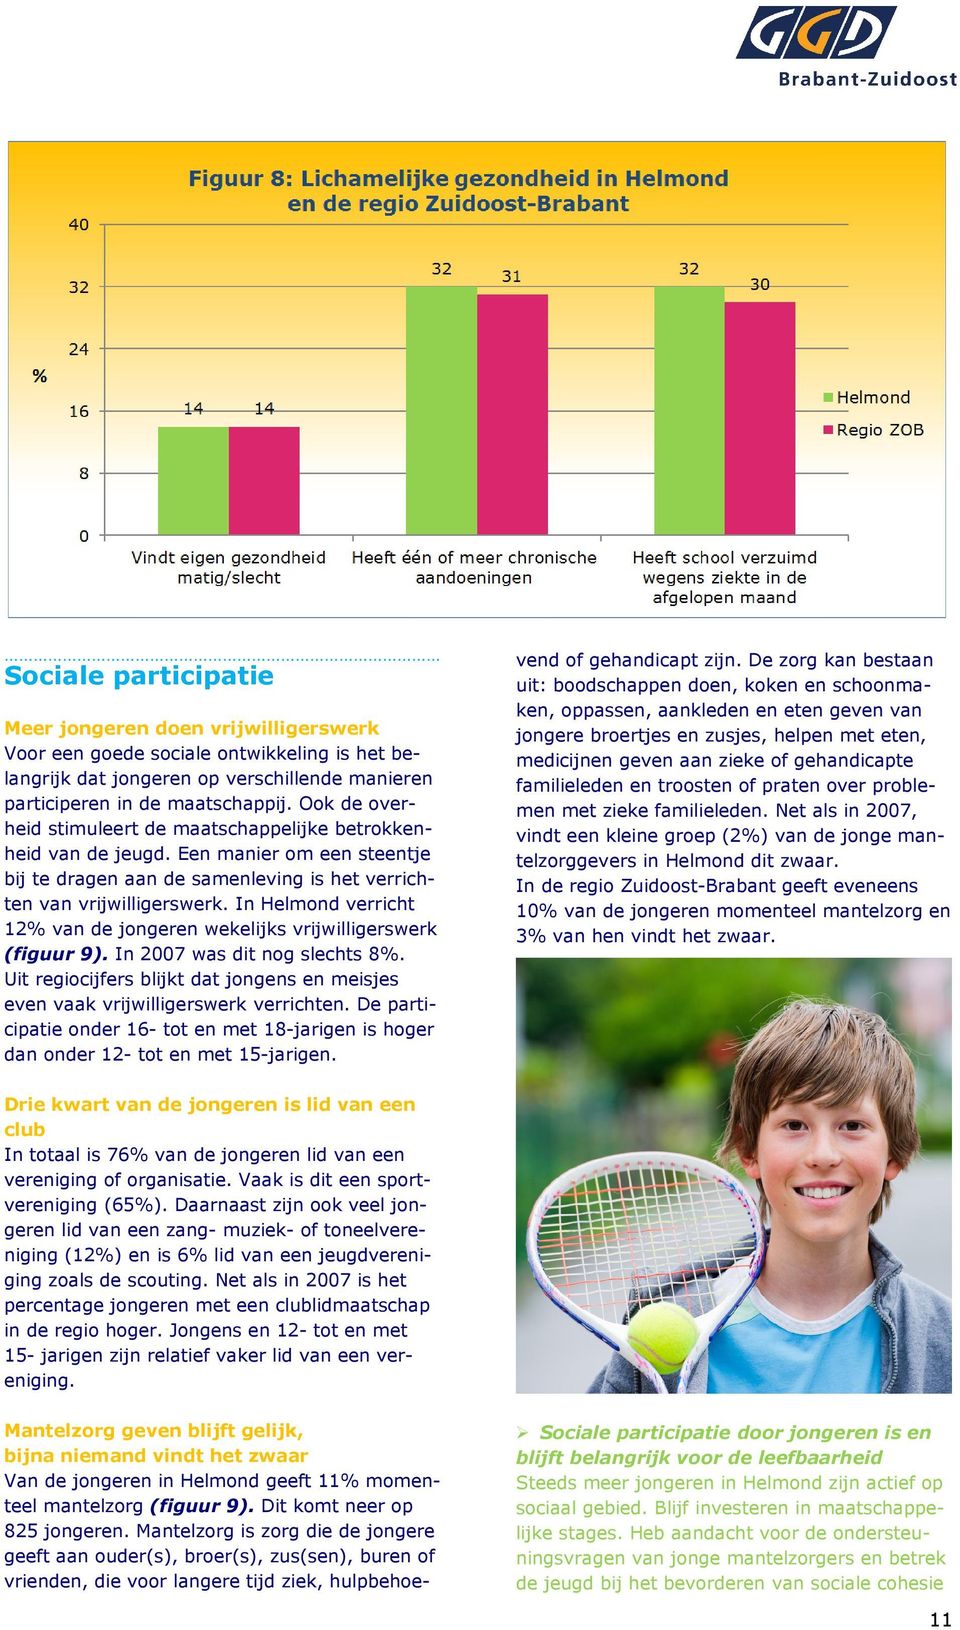 In Helmond verricht 12% van de jongeren wekelijks vrijwilligerswerk (figuur 9). In 2007 was dit nog slechts 8%. Uit regiocijfers blijkt dat jongens en meisjes even vaak vrijwilligerswerk verrichten.